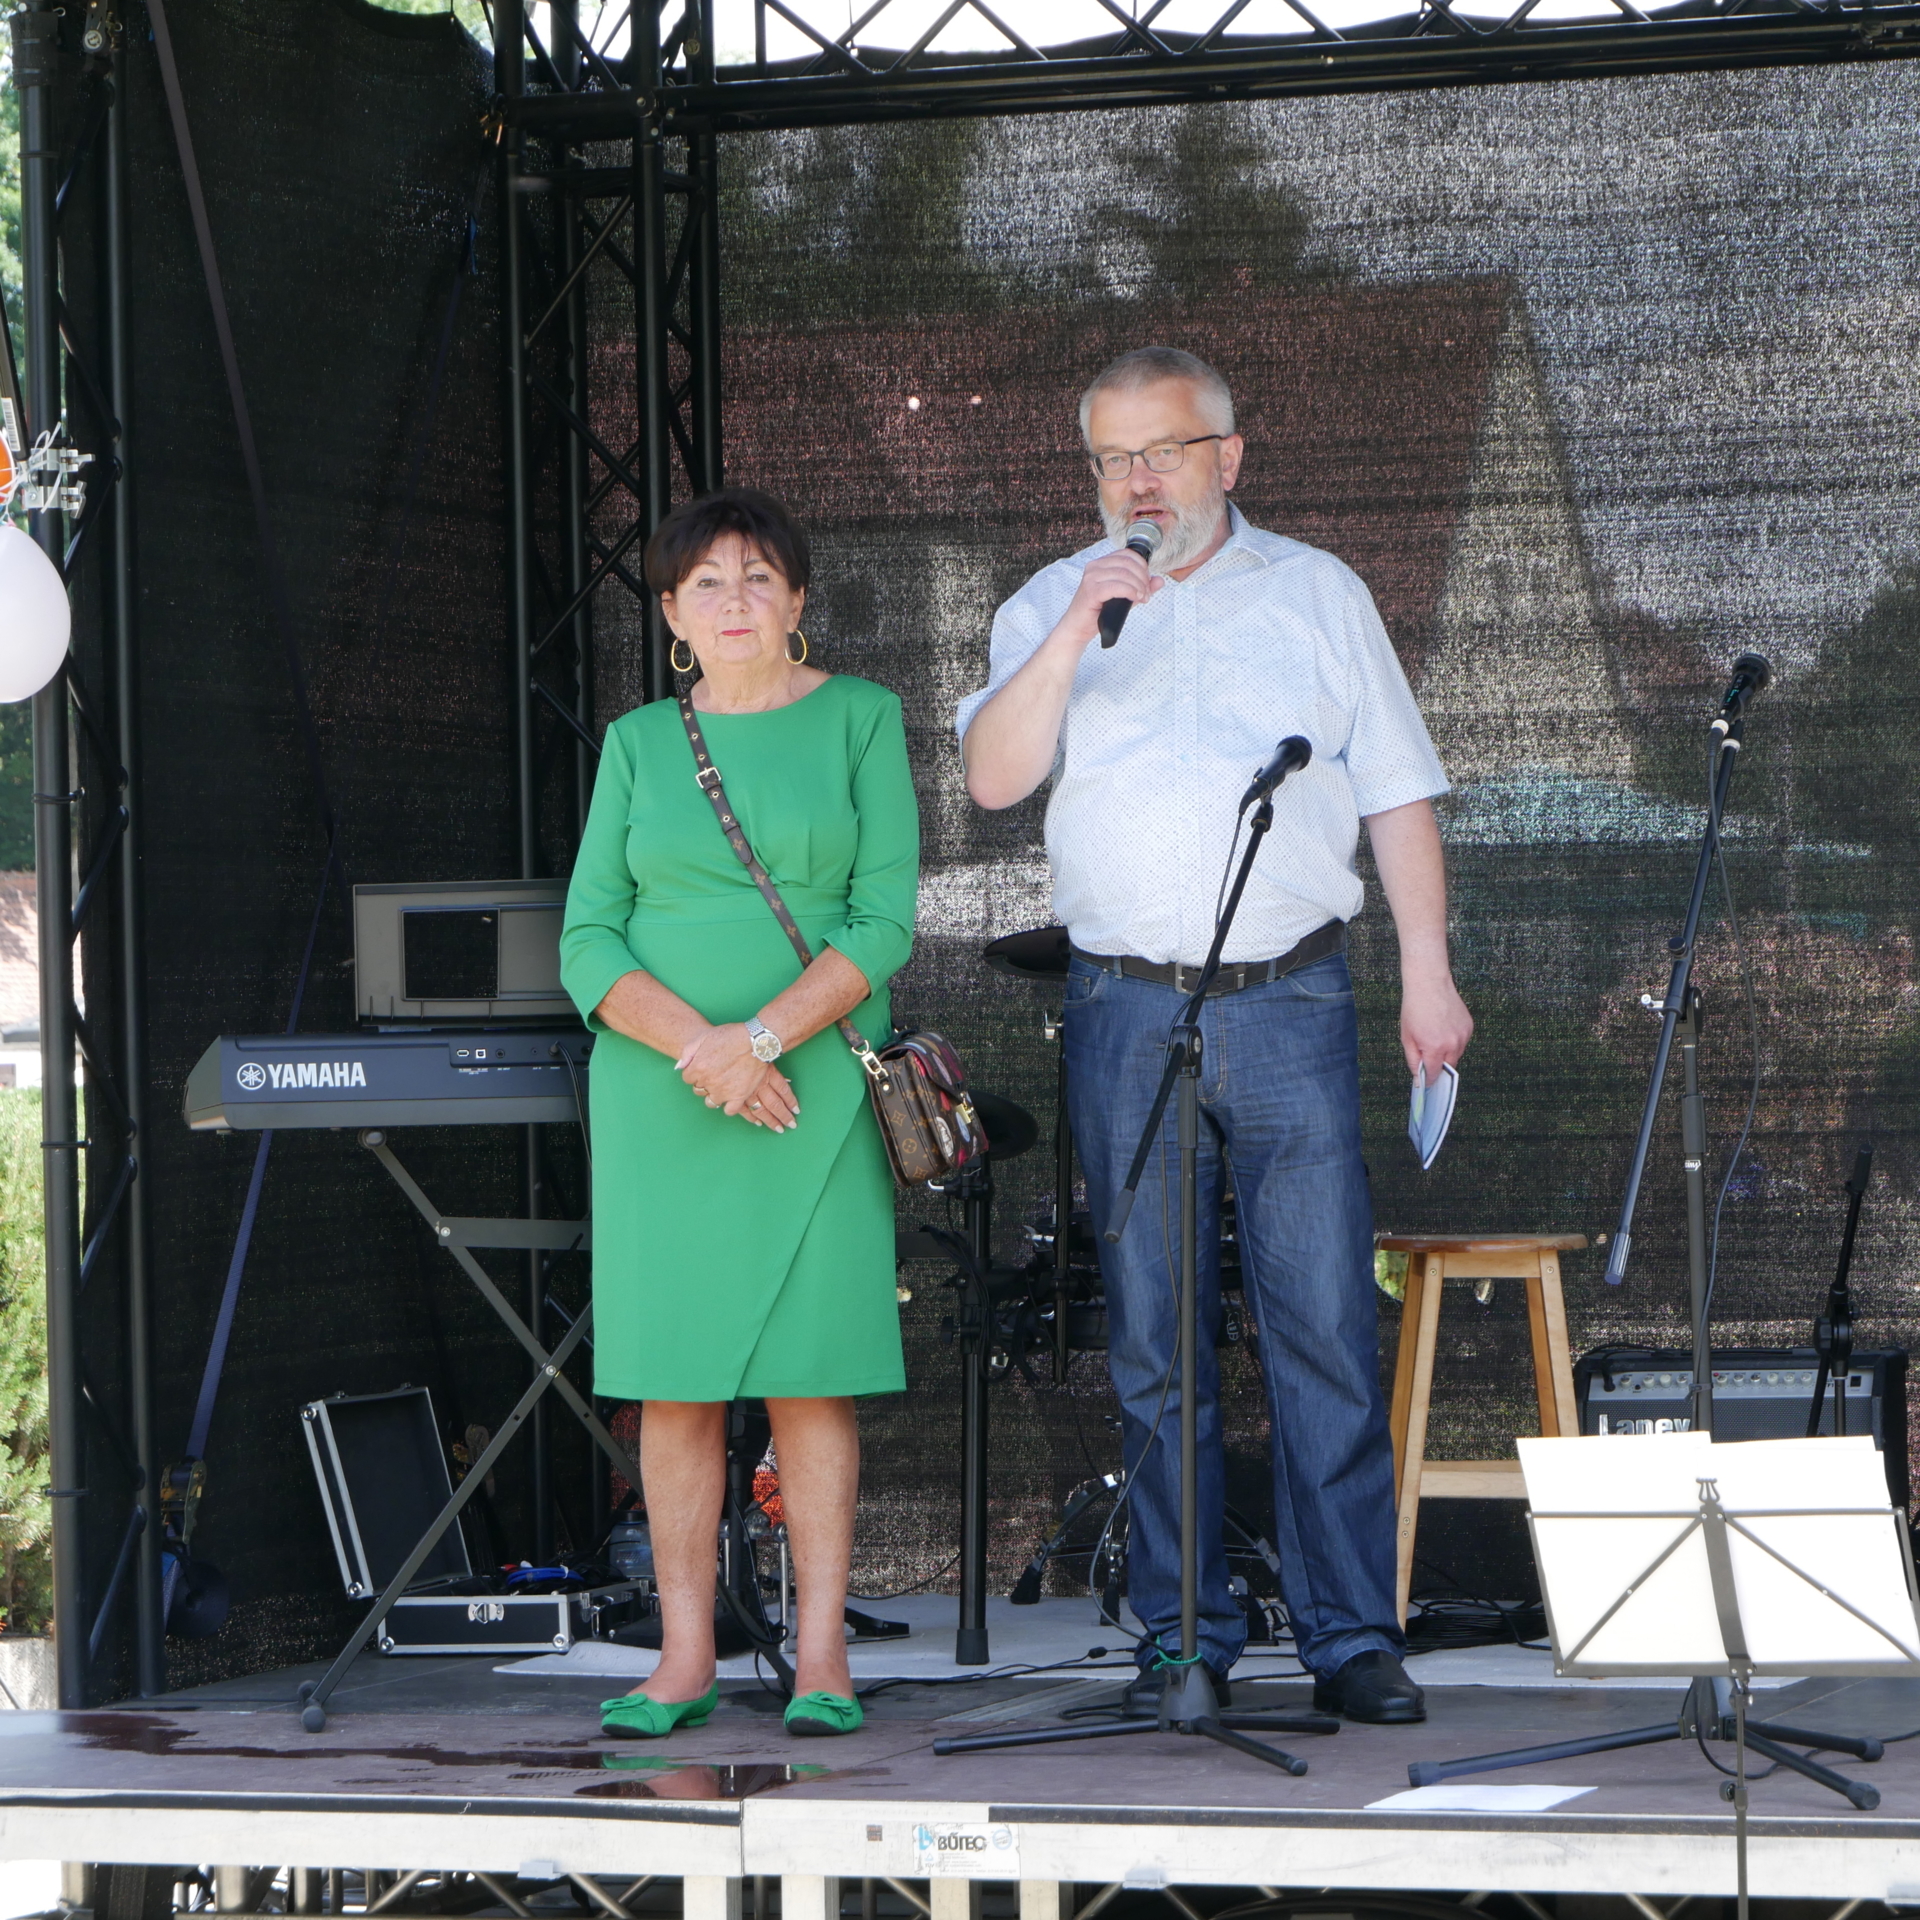 Bild: Eröffnung auf der Bühne durch Bürgermeister Stefan Feustel und MdL Kerstin Nicolaus